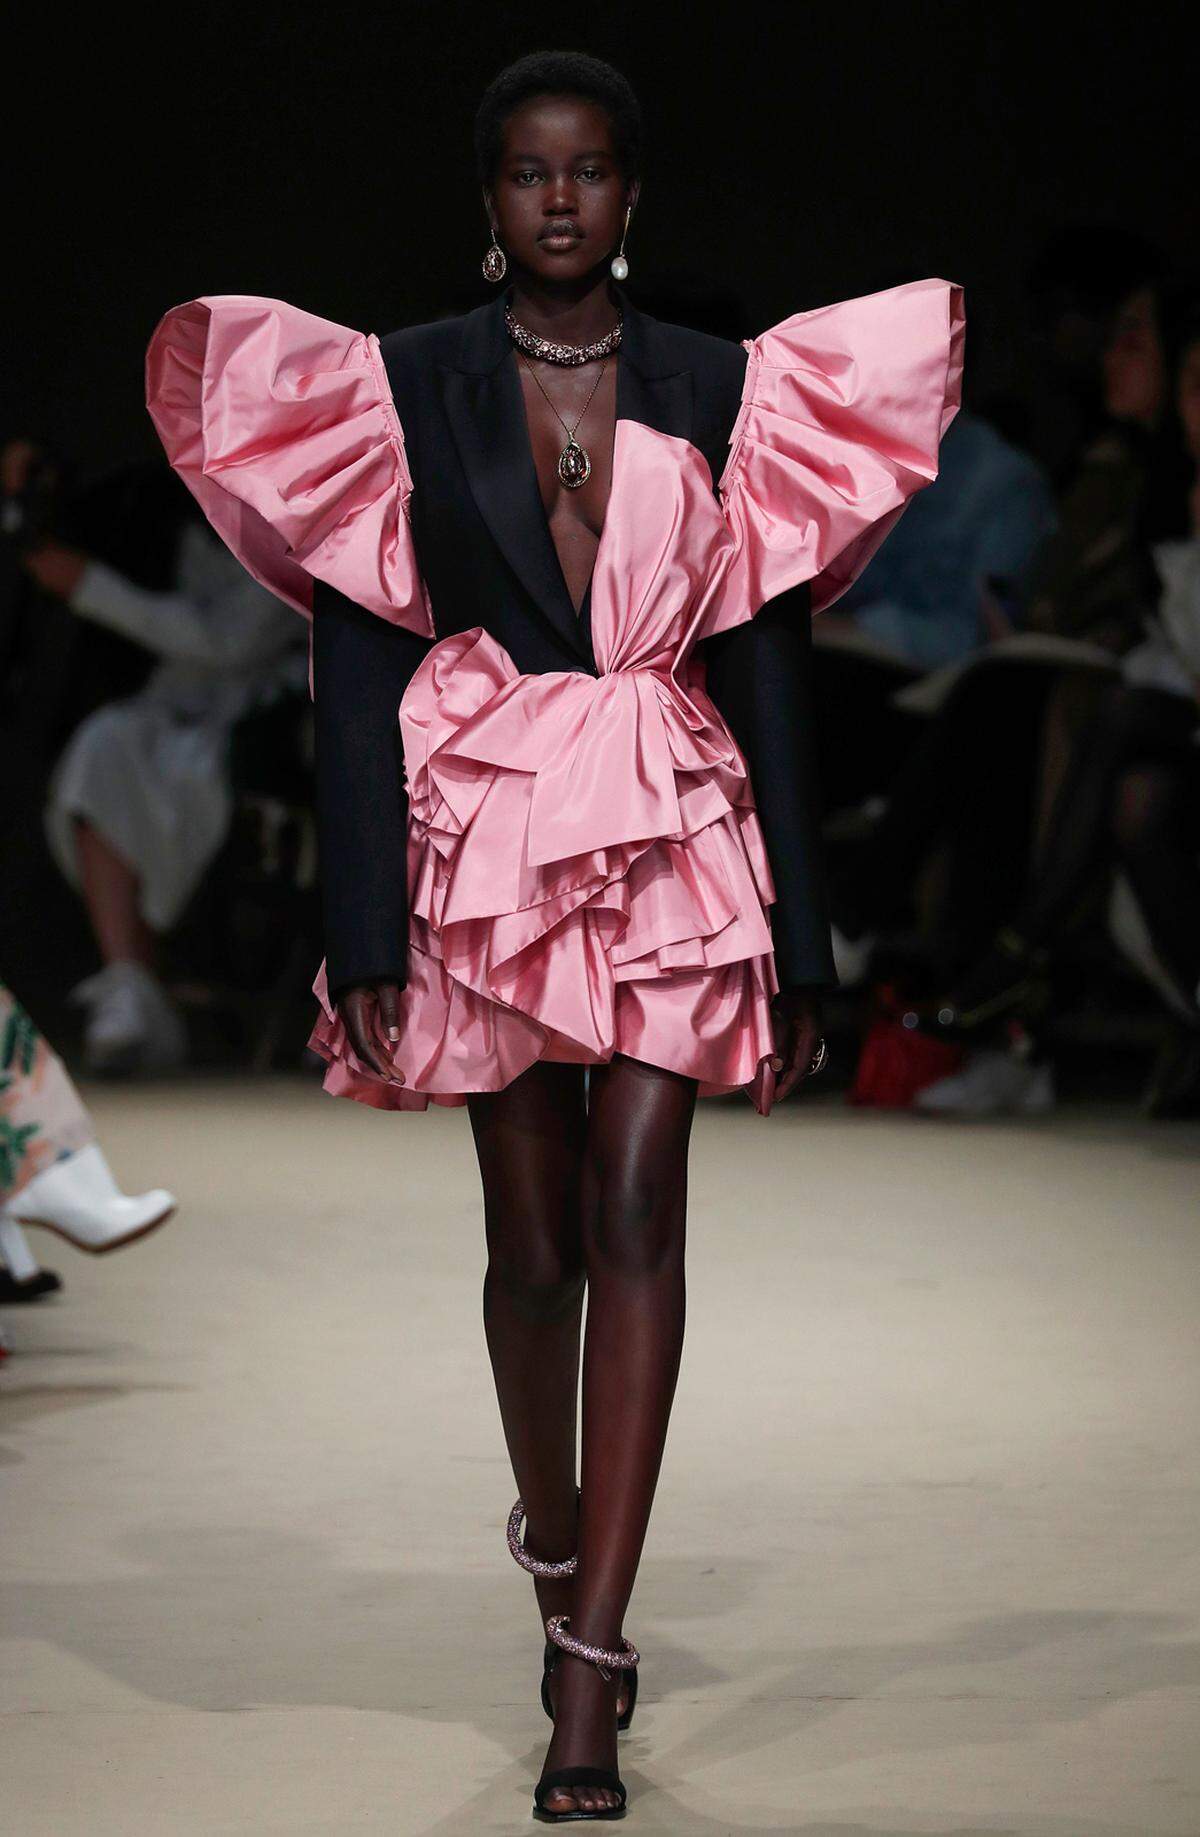 Kraftvolle Silhouetten stehen stehen bei den Pariser Modewochen ganz oben auf der Liste der Trends. Auch bei Alexander McQueen war das in einem 80er-Jahre-Look zu beobachten.